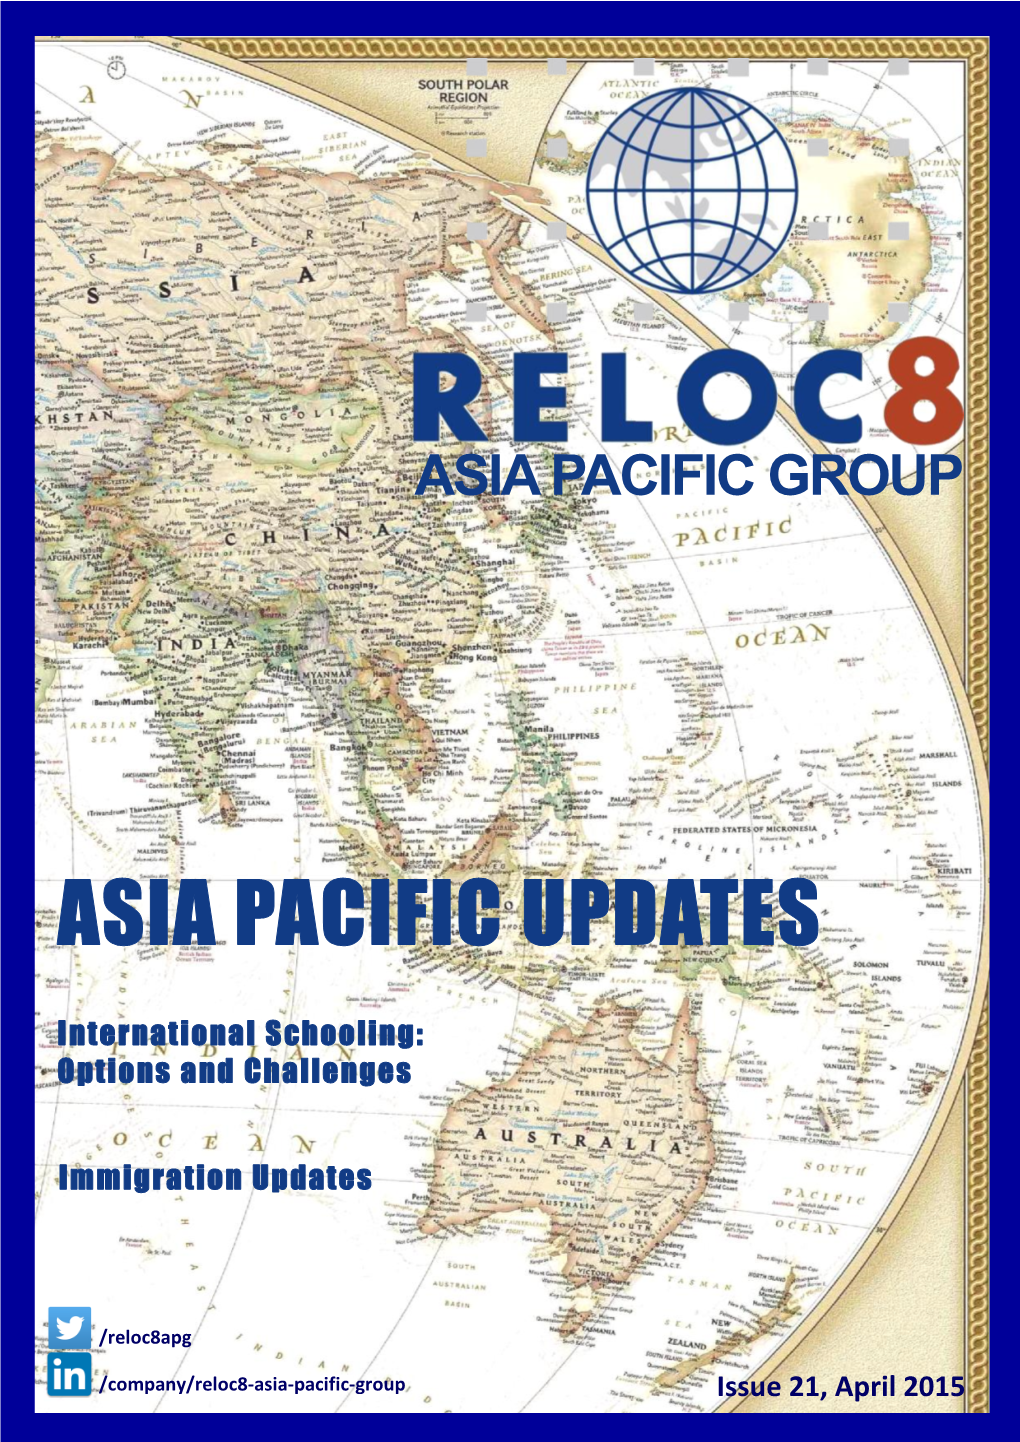 Asia Pacific Updates